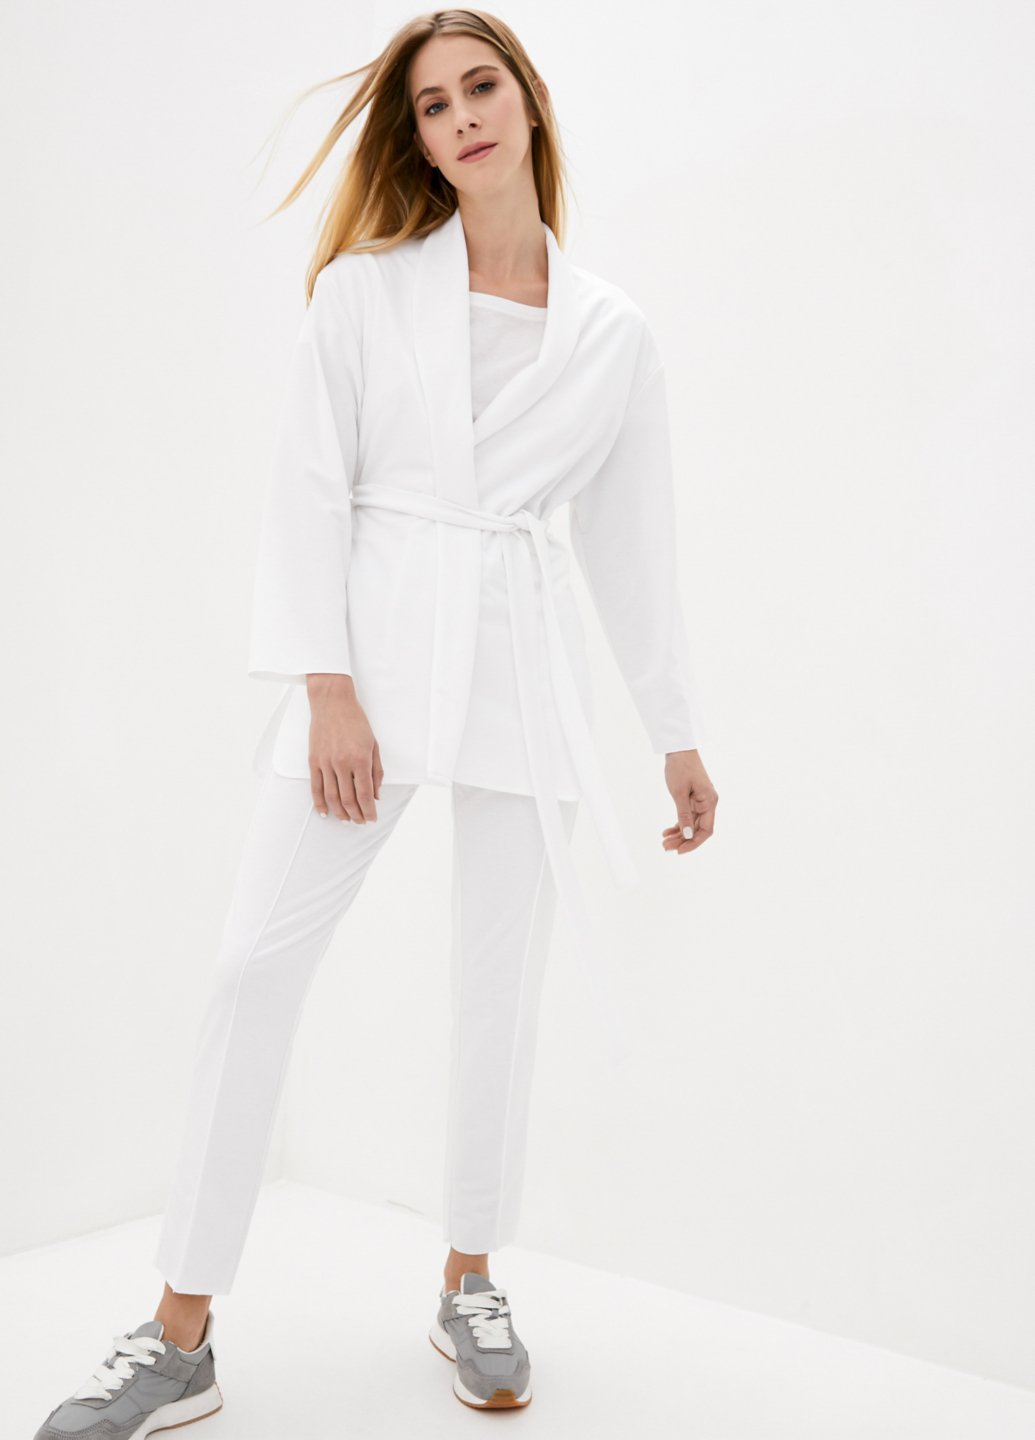 Купить Классический костюм женский белого цвета Merlini Йоркшир 100000052, размер 42-44 в интернет-магазине